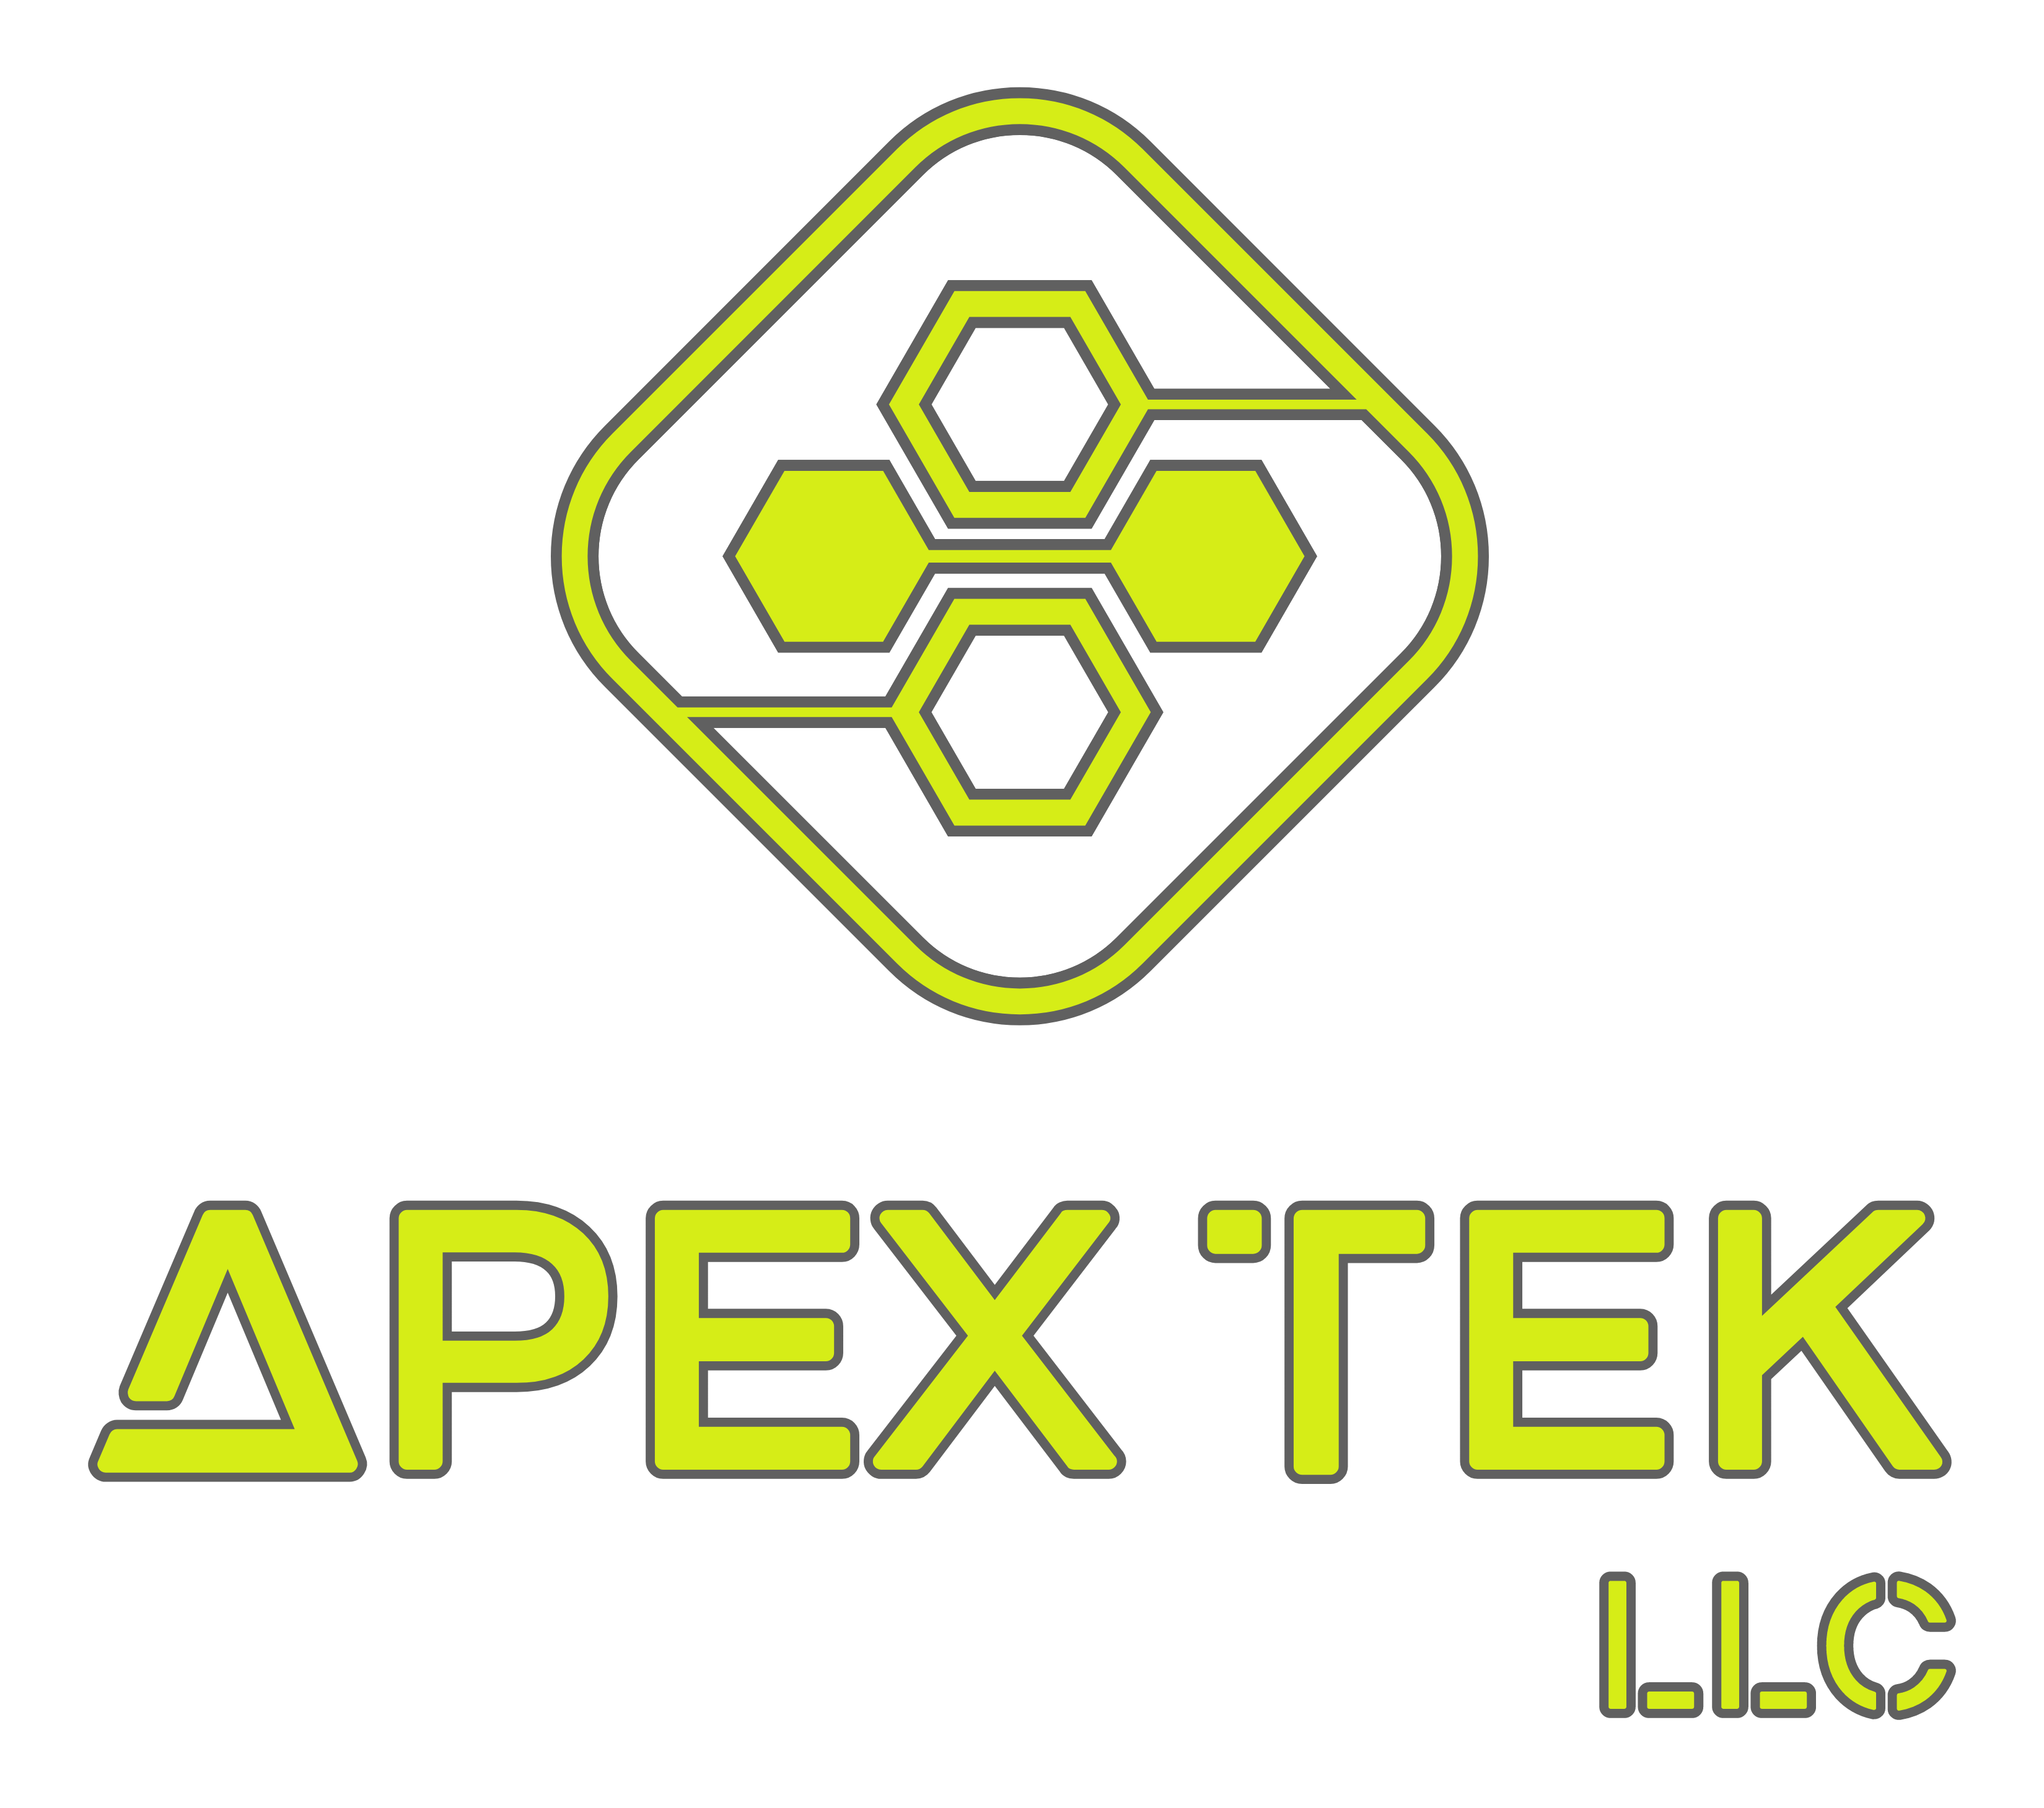 APEX TEK LLC